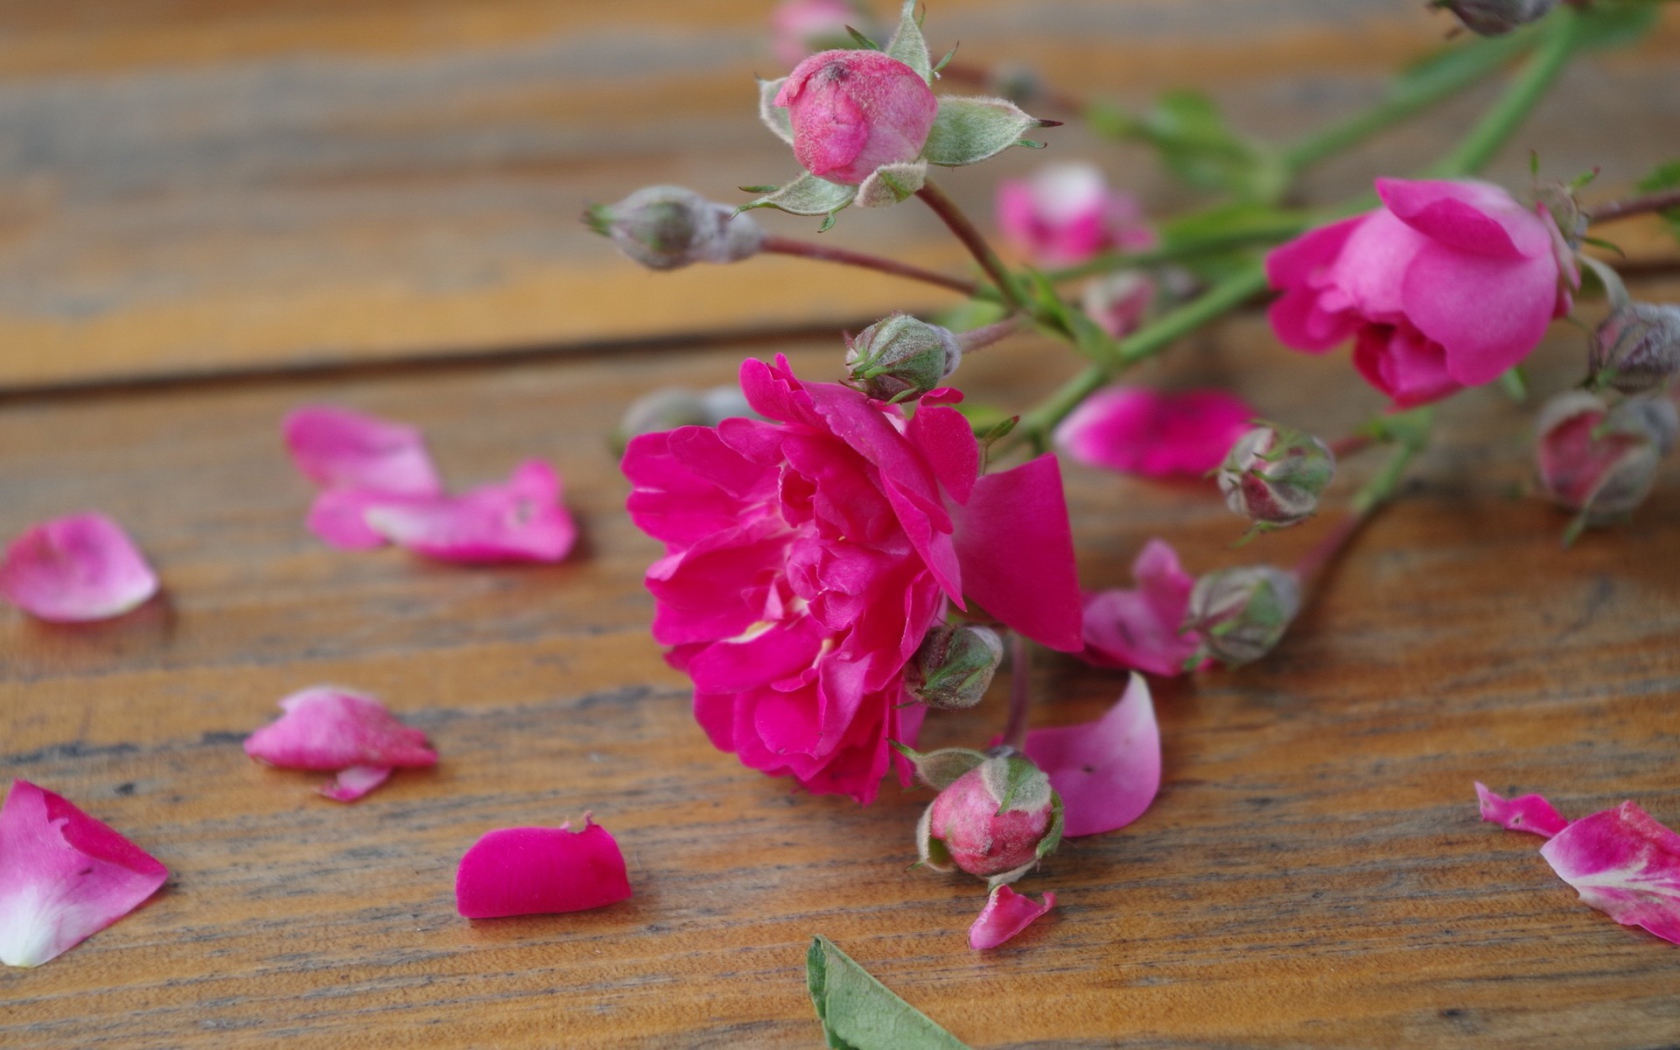 Розовый цветок среди лепестков на деревянной поверхности